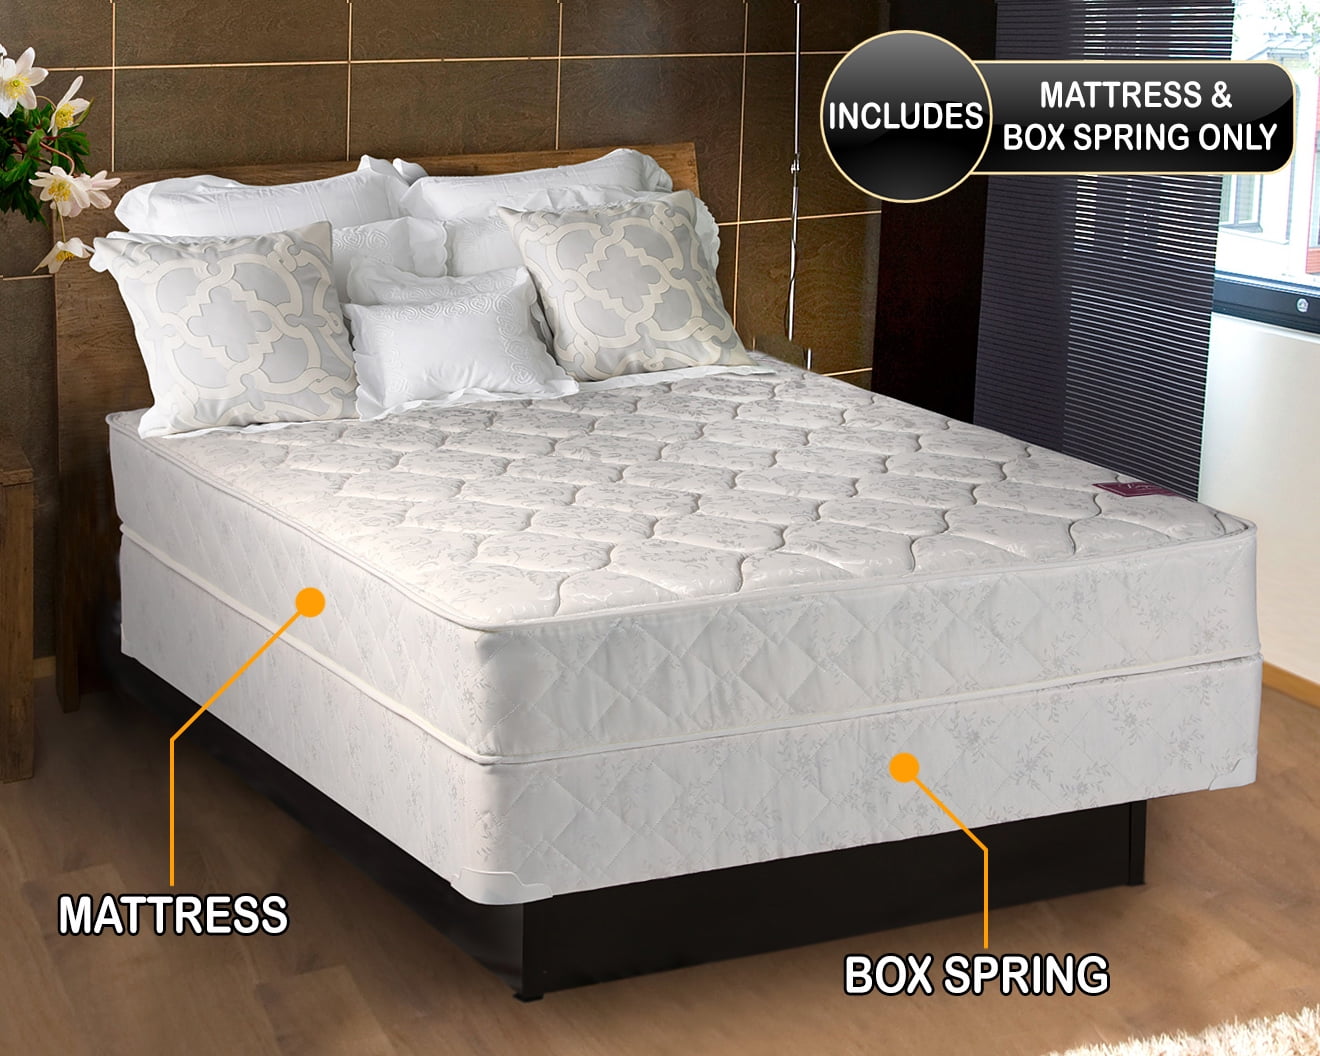 boscov's.com twin xl mattress